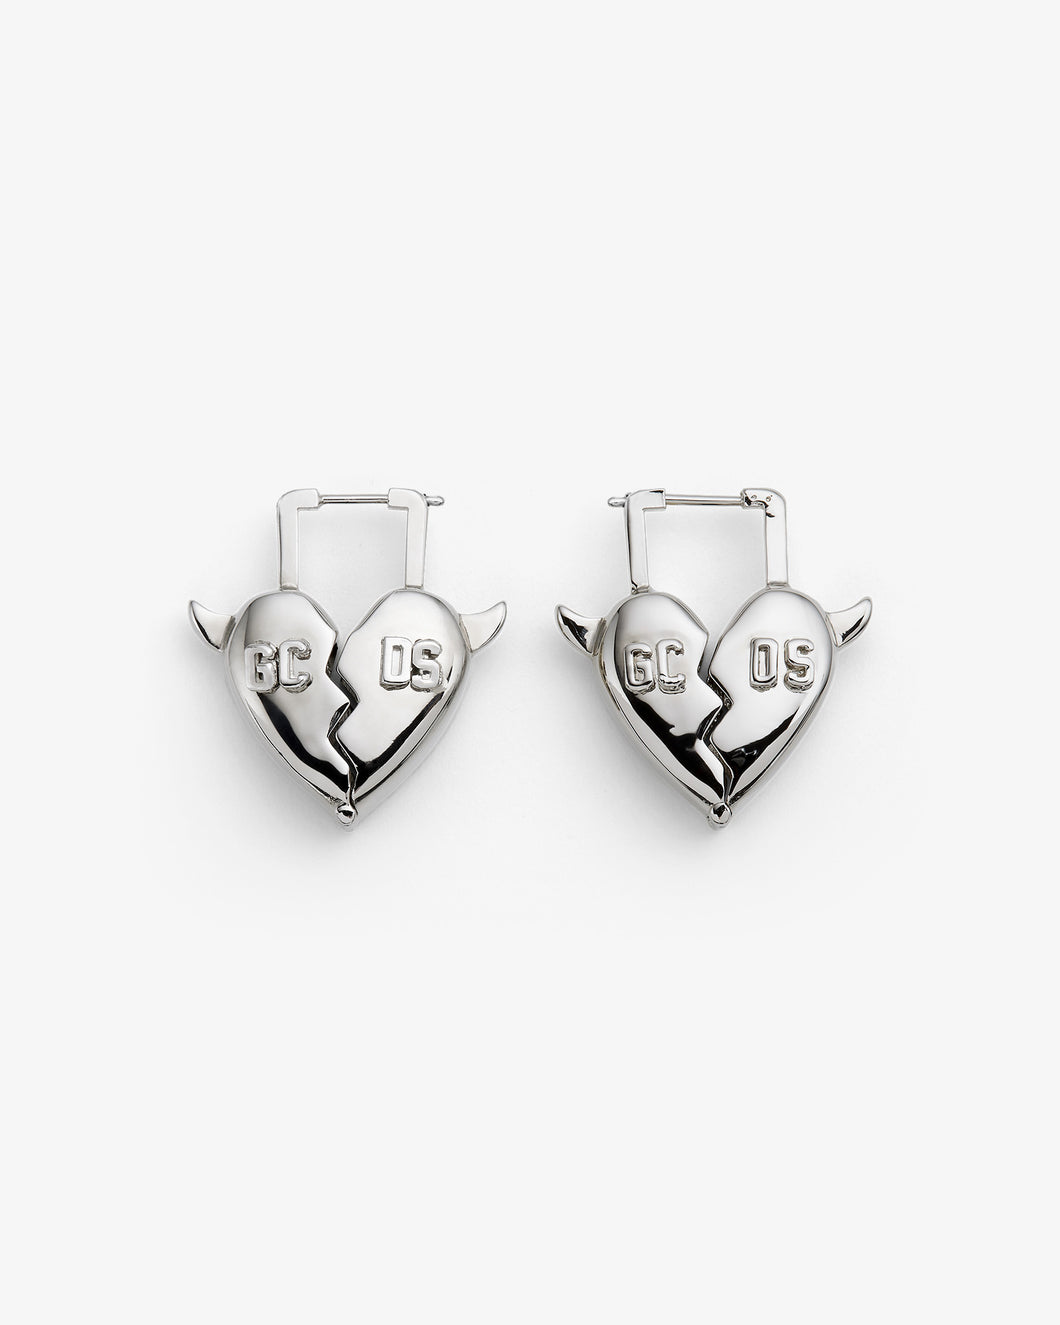 Heartbreaker earrings